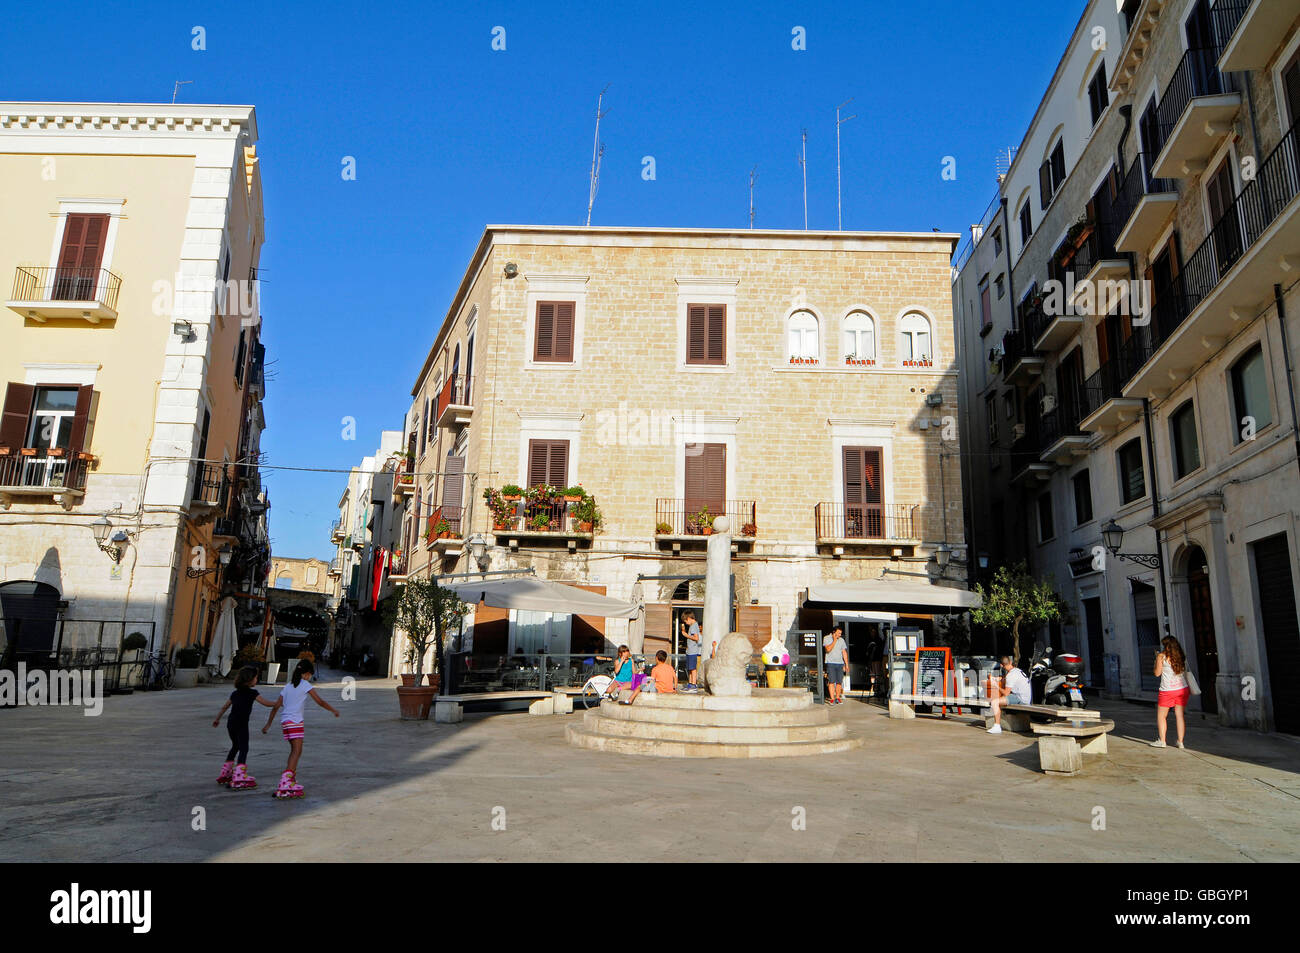 Piazza Mercantile, square, Bari Vecchia, historic city, Bari, Puglia, Italy Stock Photo